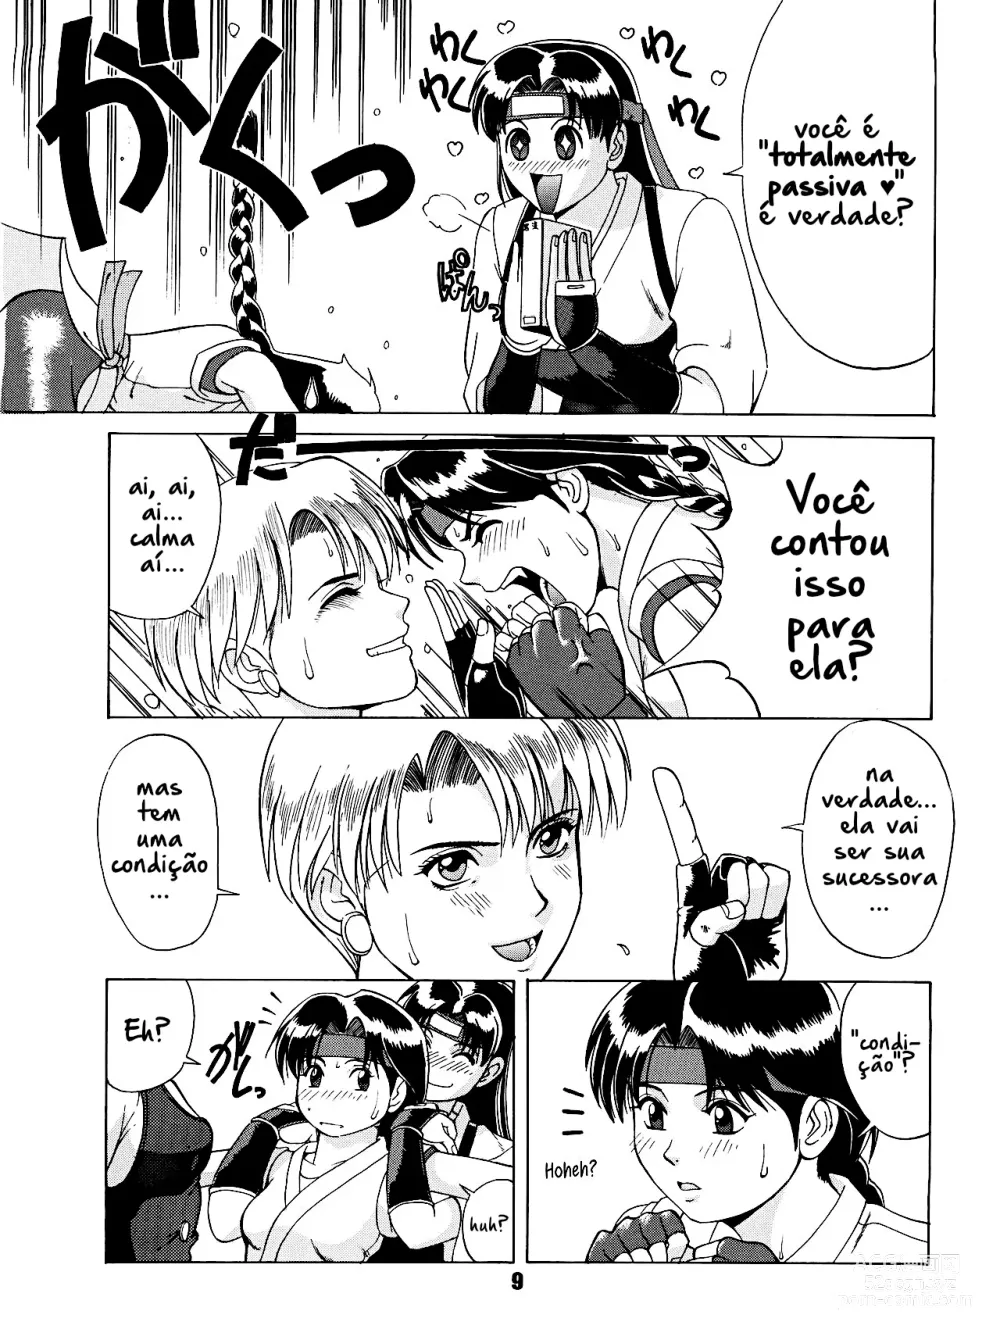 Page 8 of doujinshi The Yuri & Friends 96